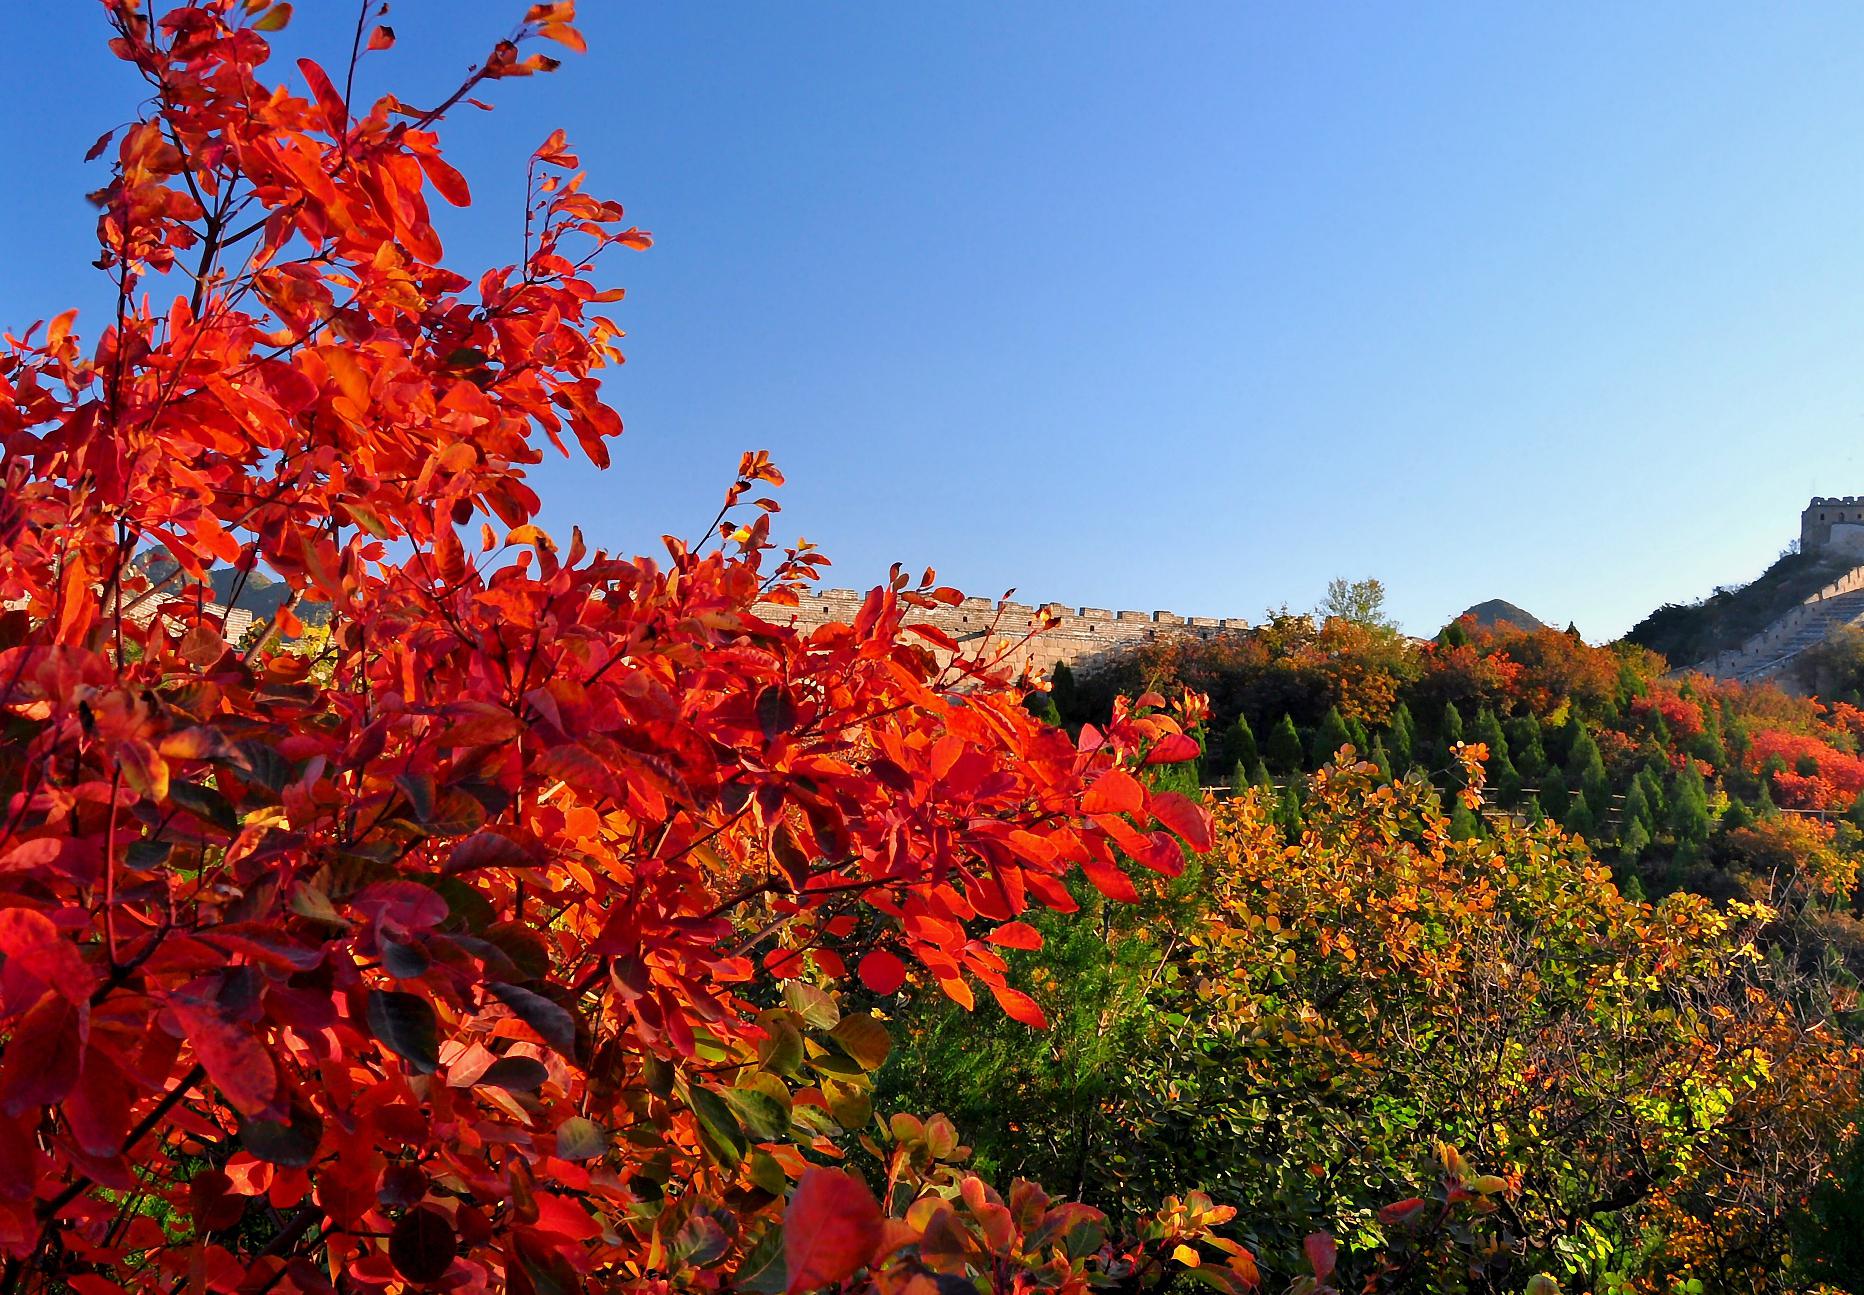 秋冬季节的美景 秋天的红叶,是大自然为我们准备的一场视觉盛宴